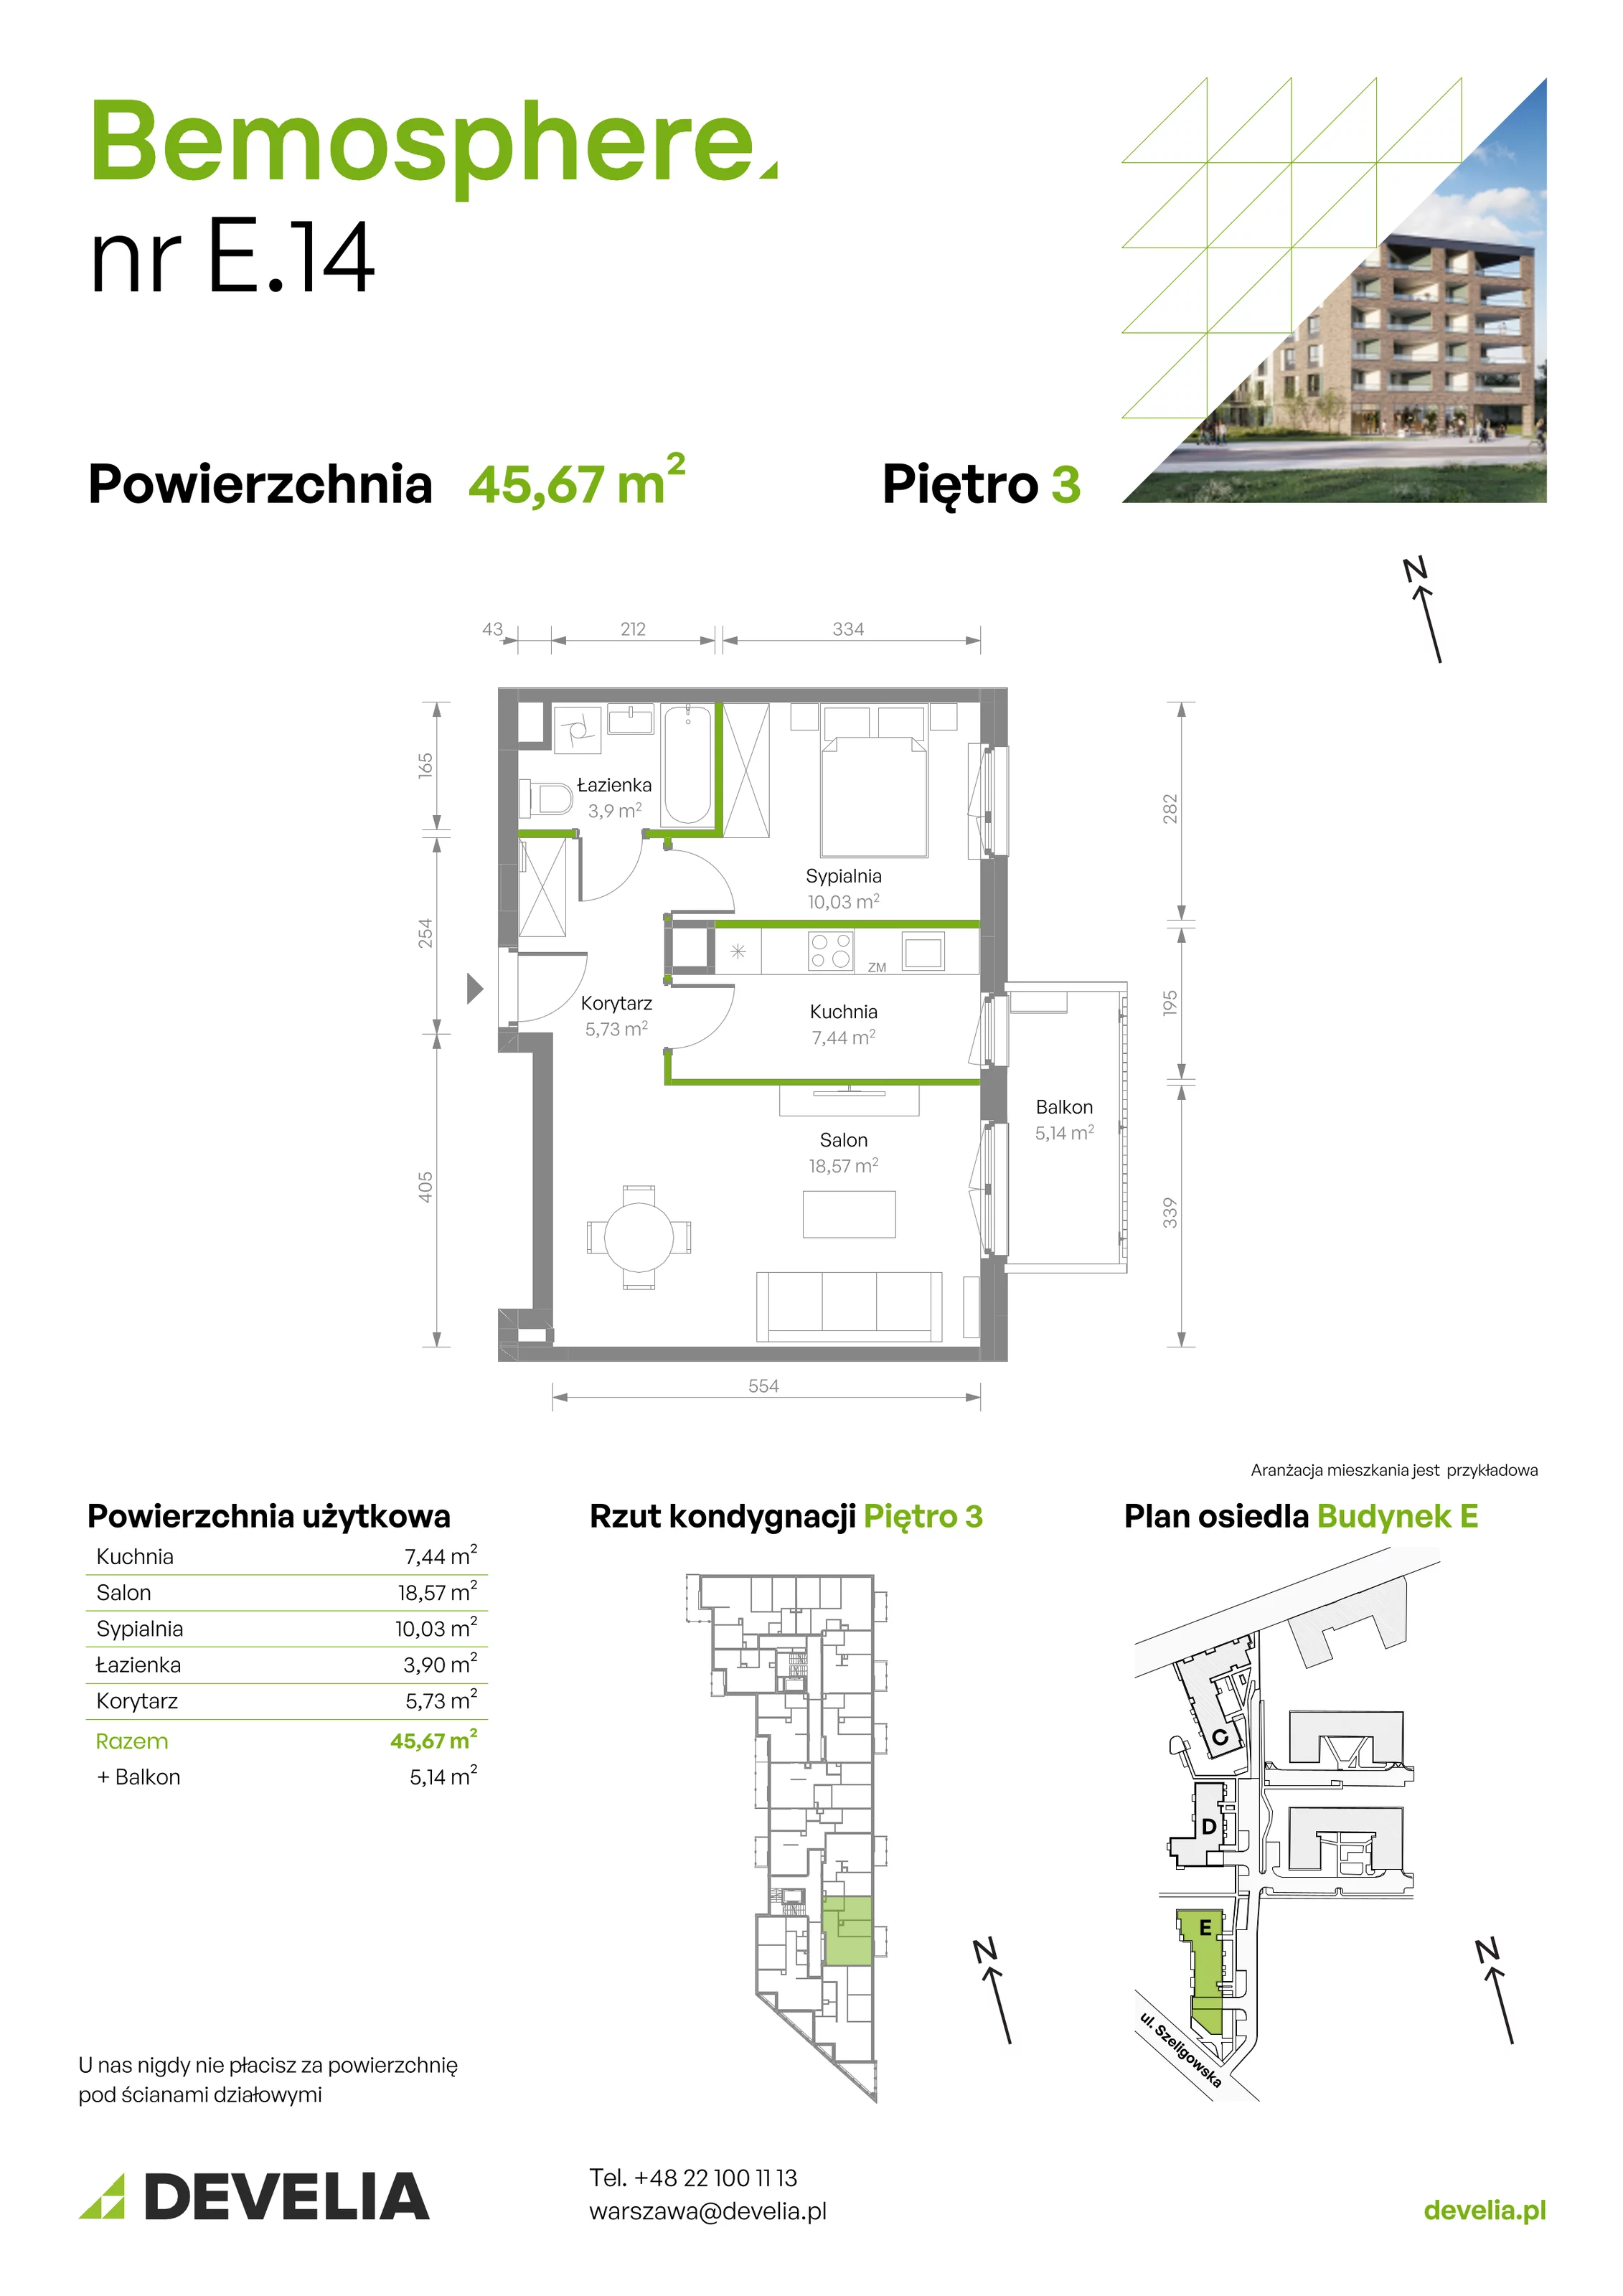 Mieszkanie 45,67 m², piętro 3, oferta nr E/014, Bemosphere, Warszawa, Bemowo, Chrzanów, ul. Szeligowska 24